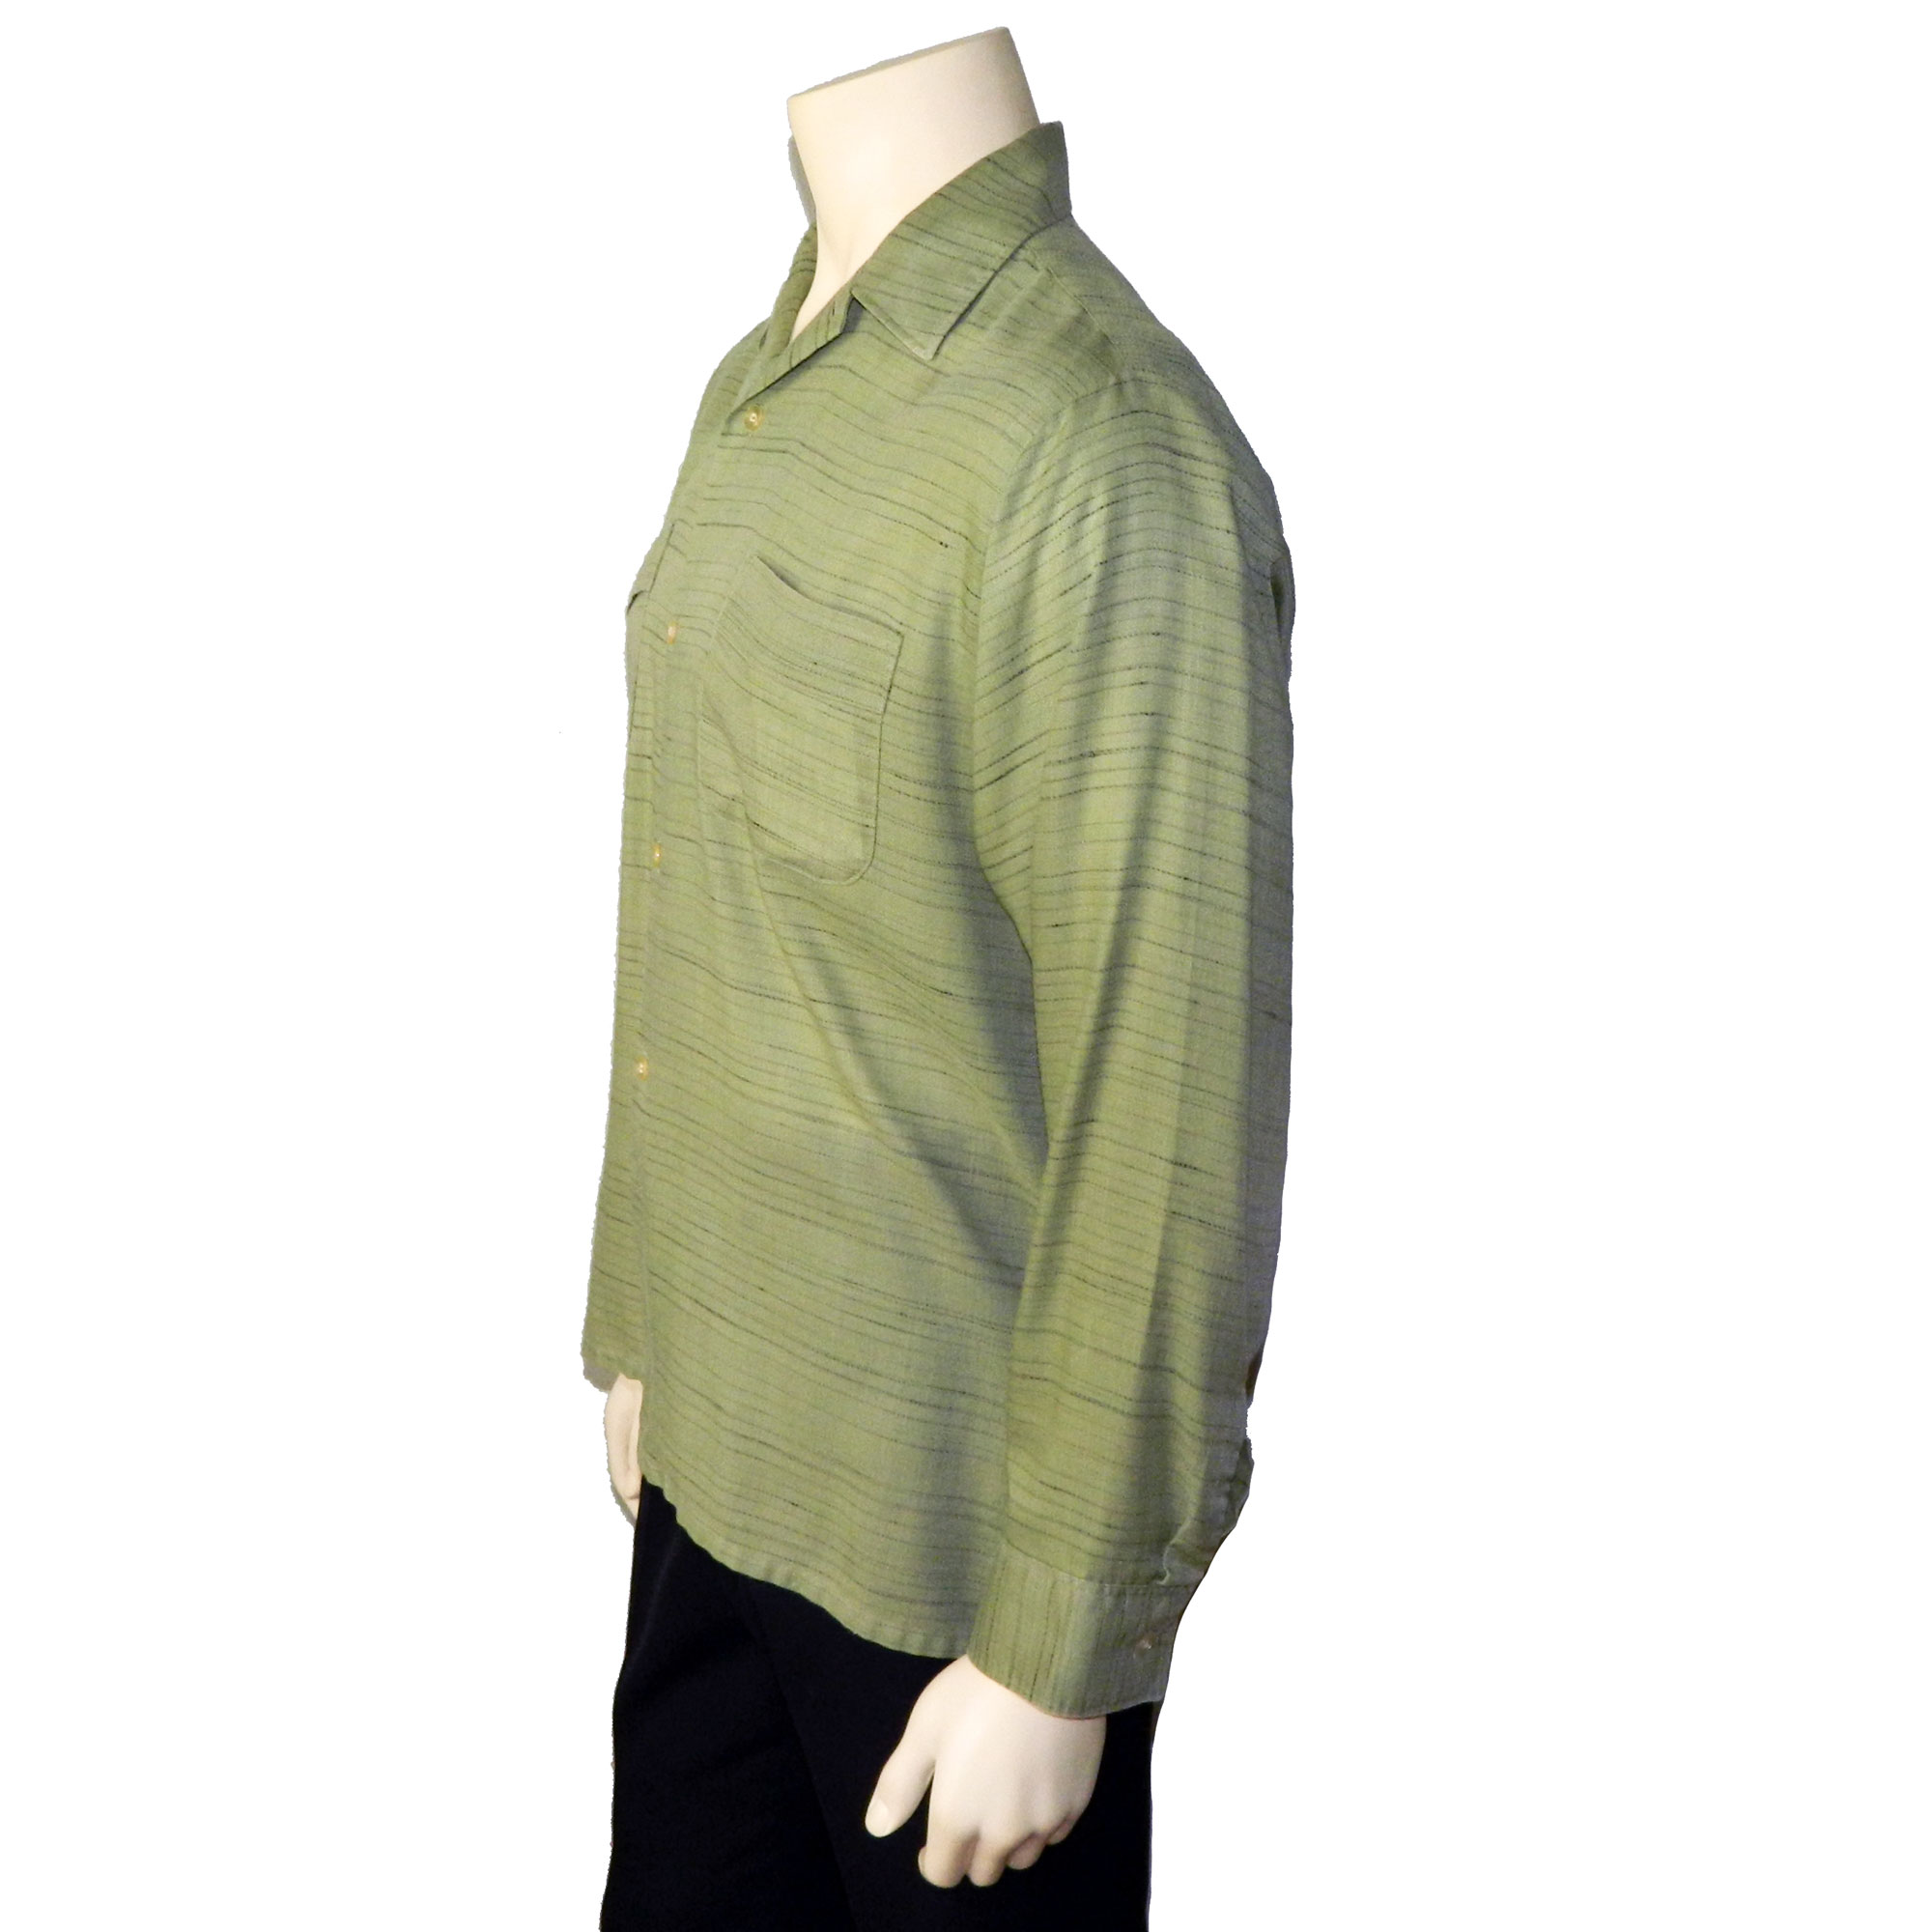 1950s green shirt